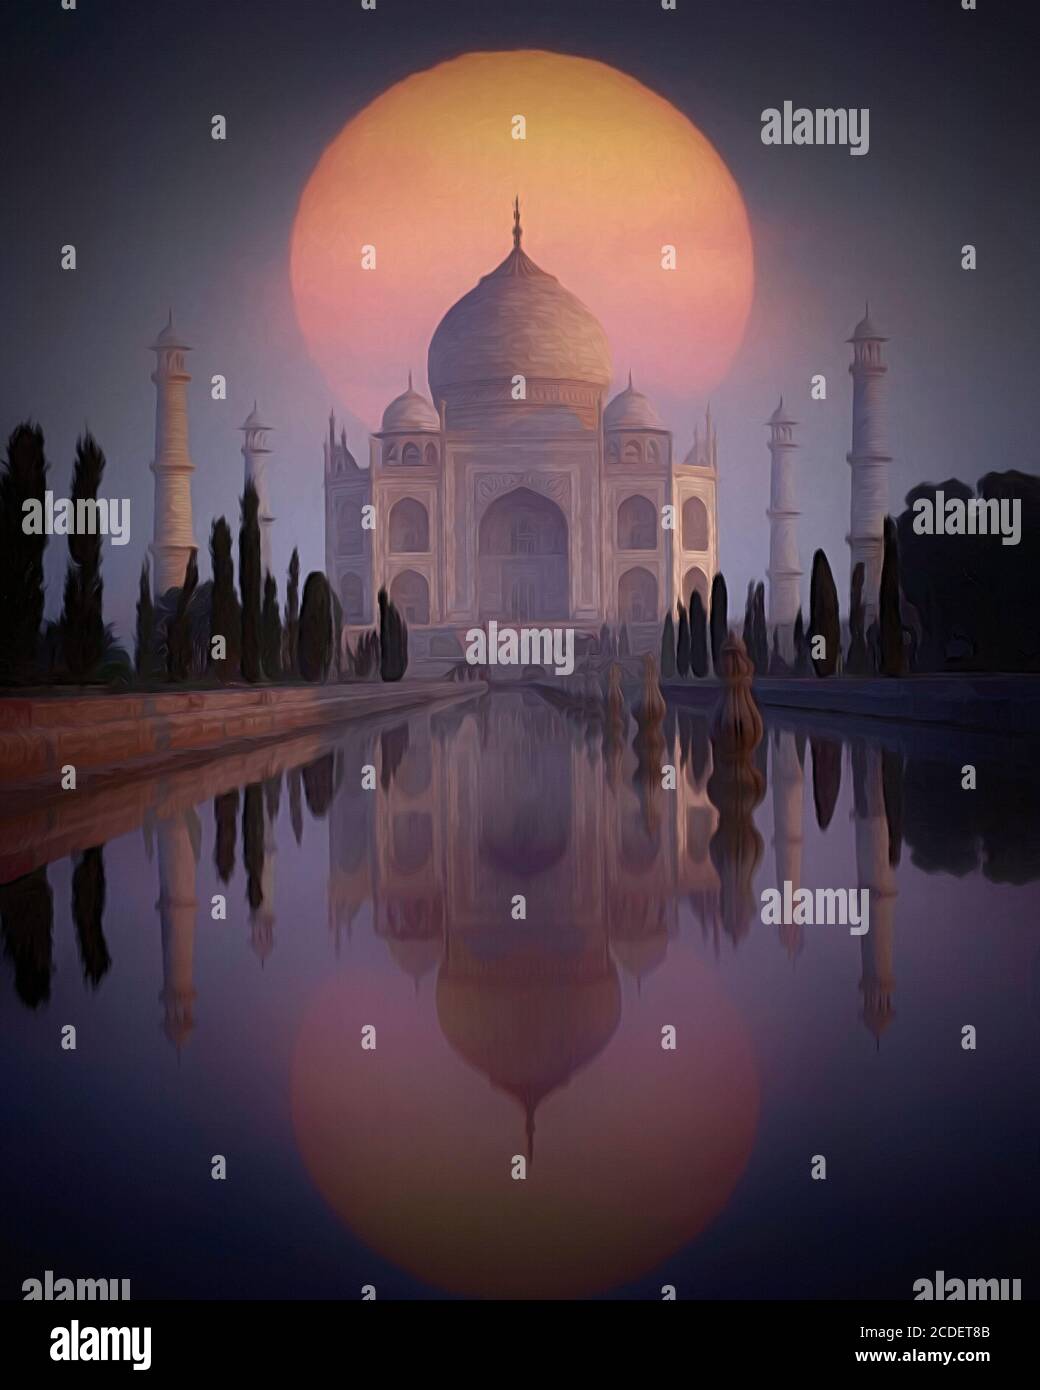 CONTEMPORARY ART: The Taj Mahal at Agra, India Stock Photo